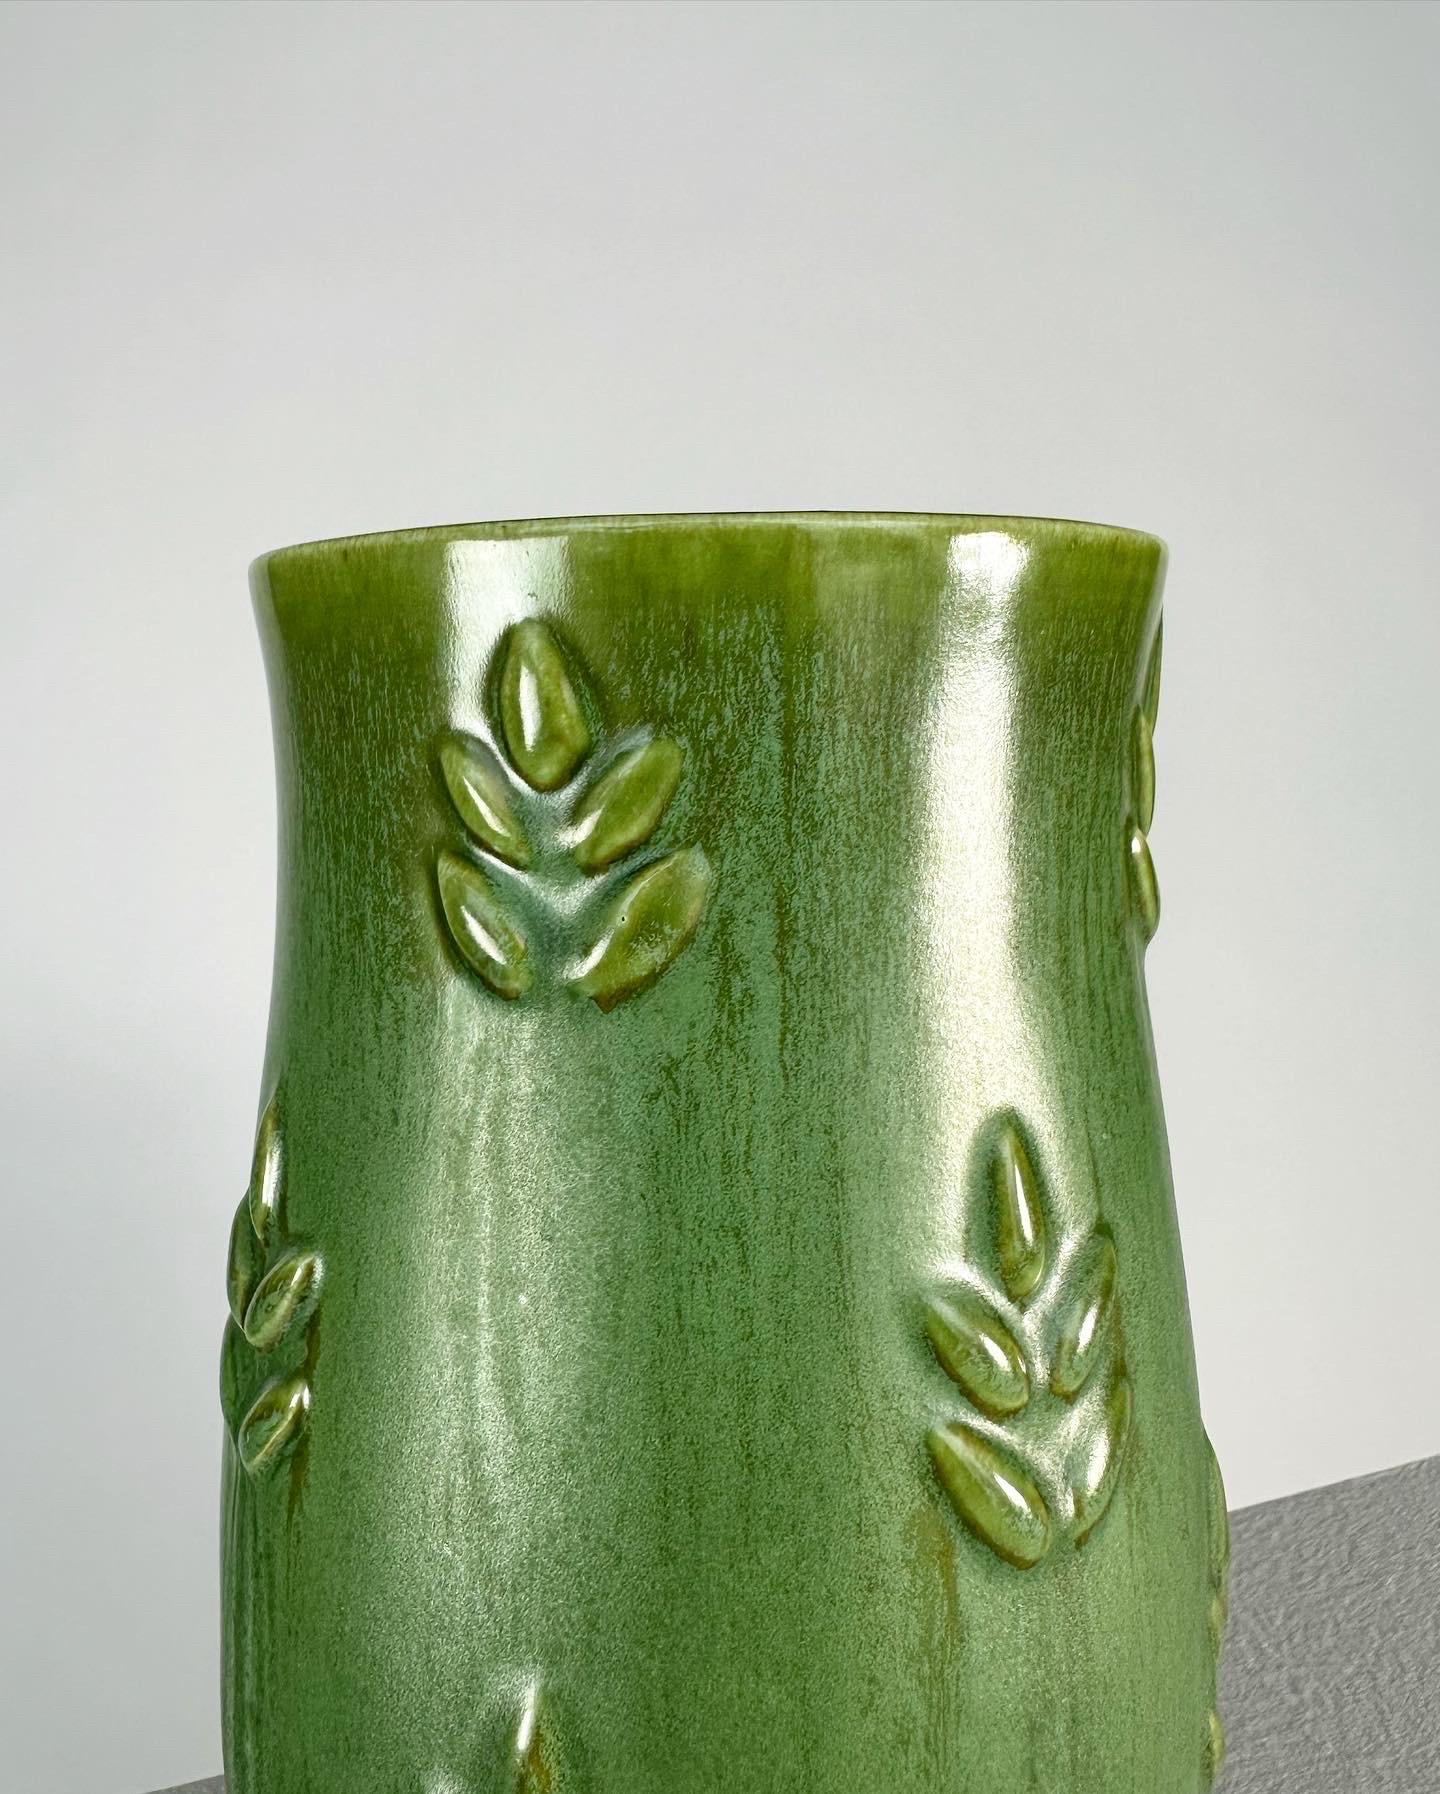 Stoneware Anna Lisa Thomson Vase Gefle Sweden Ceramic Relief Green, 1930s For Sale